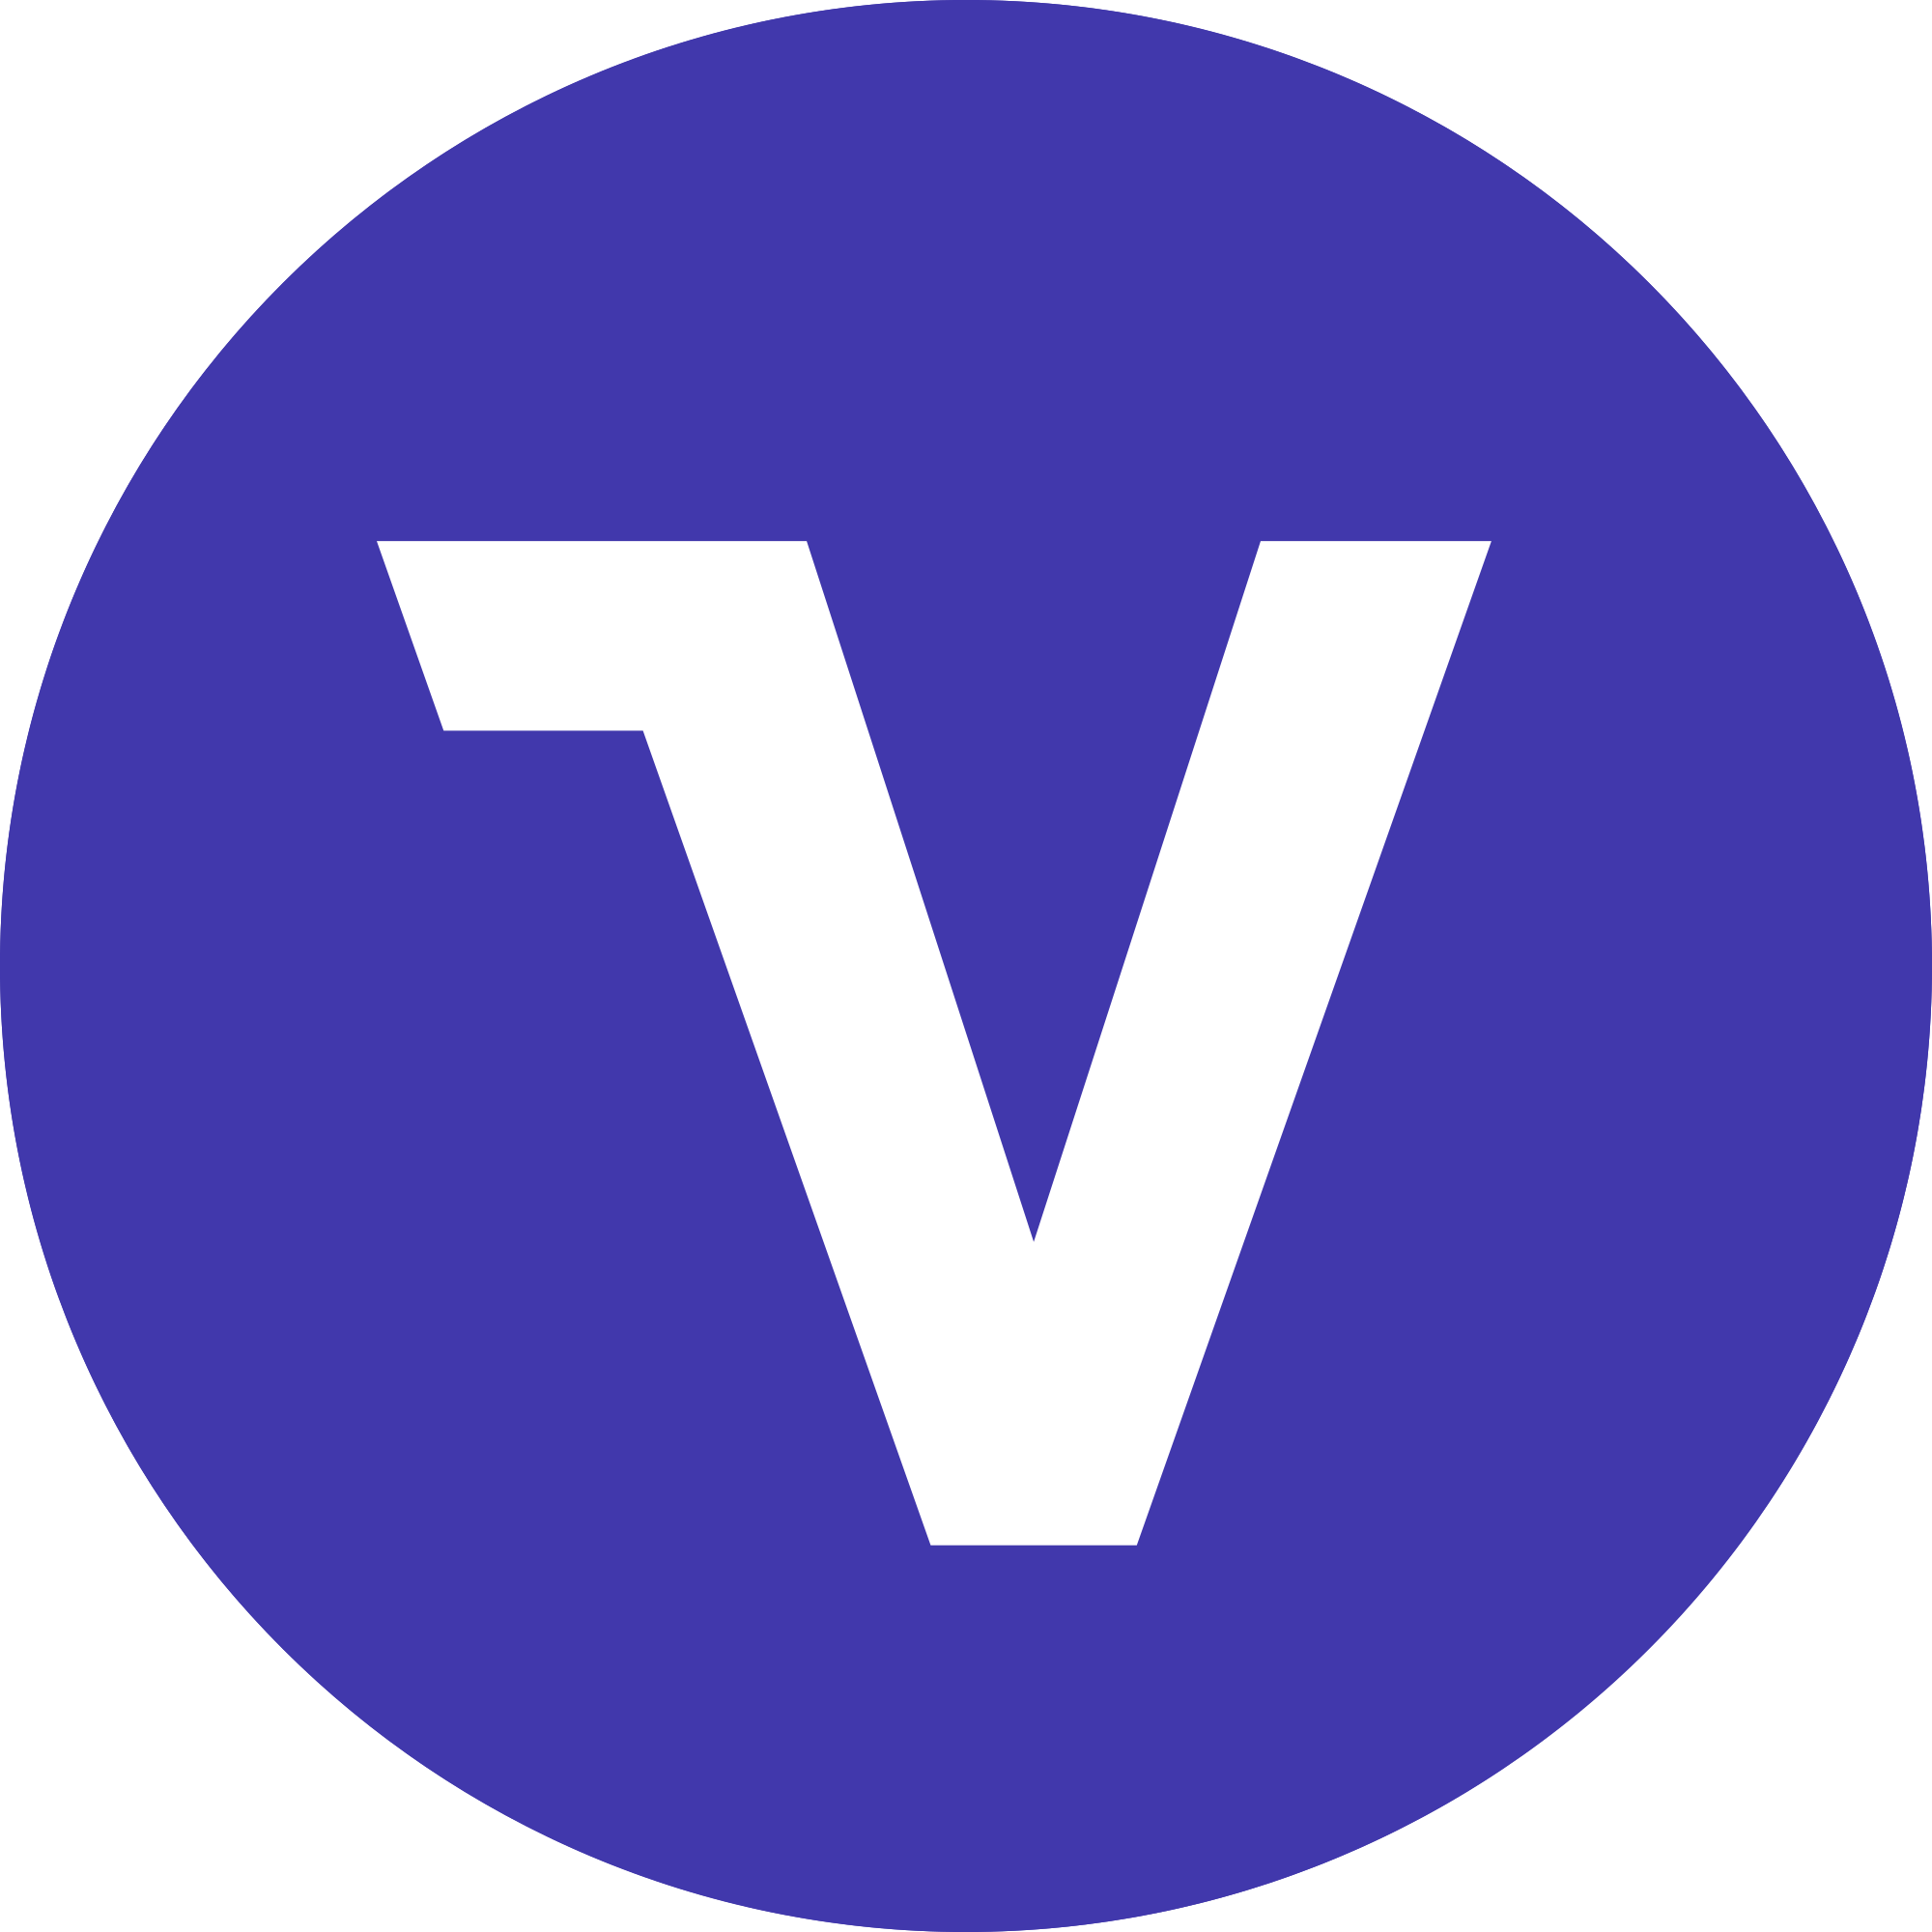 Vesper (VSP) Logo .SVG and .PNG Files Download